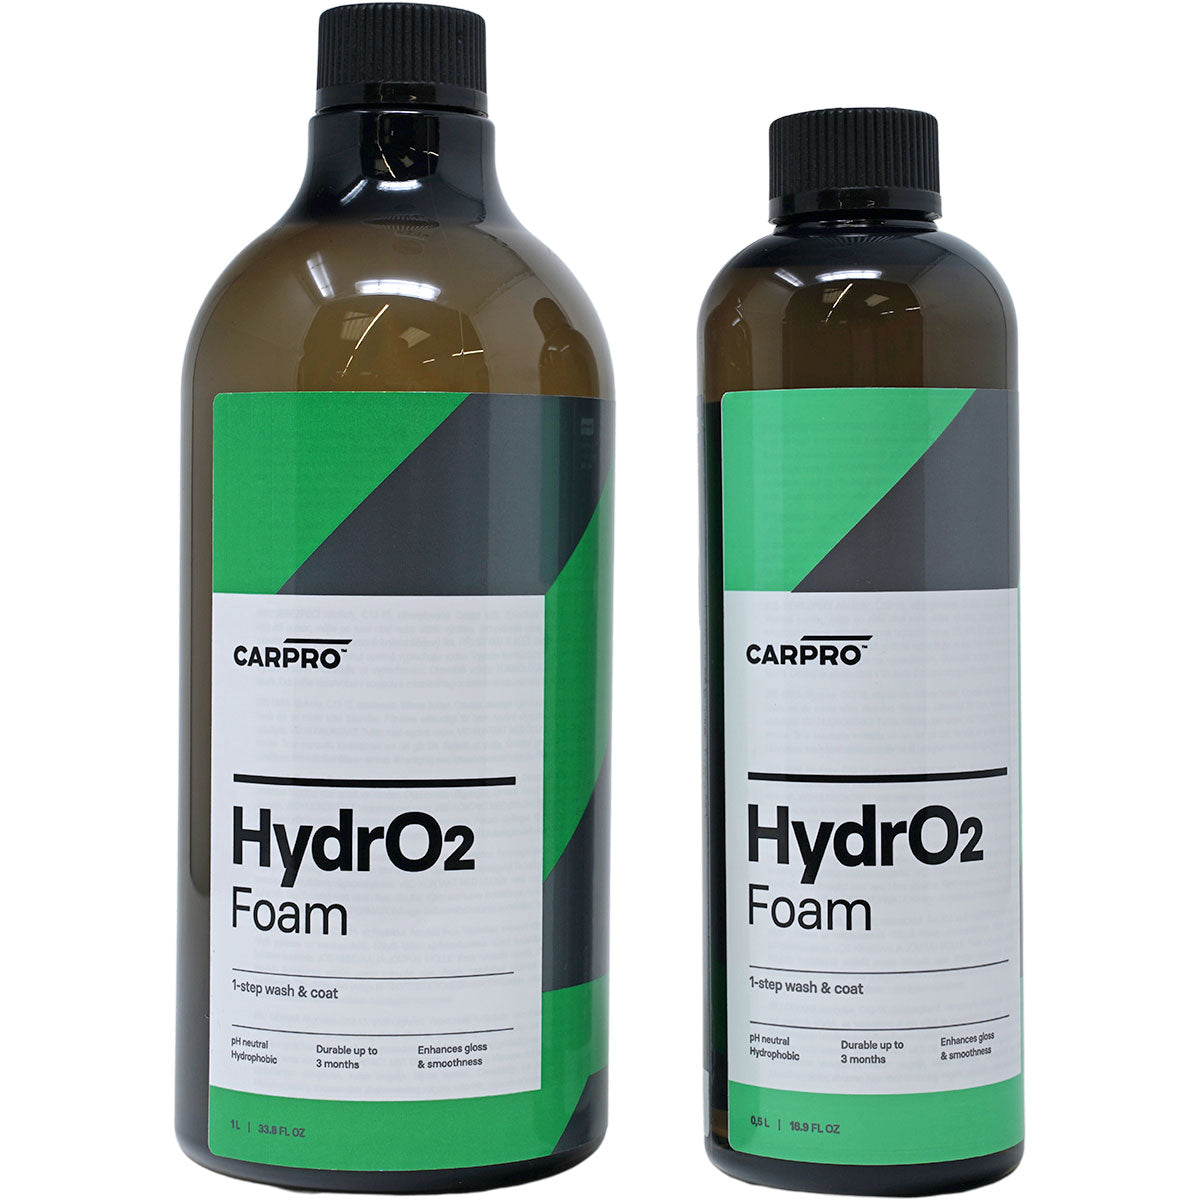 CarPro Descale Acidic Soap